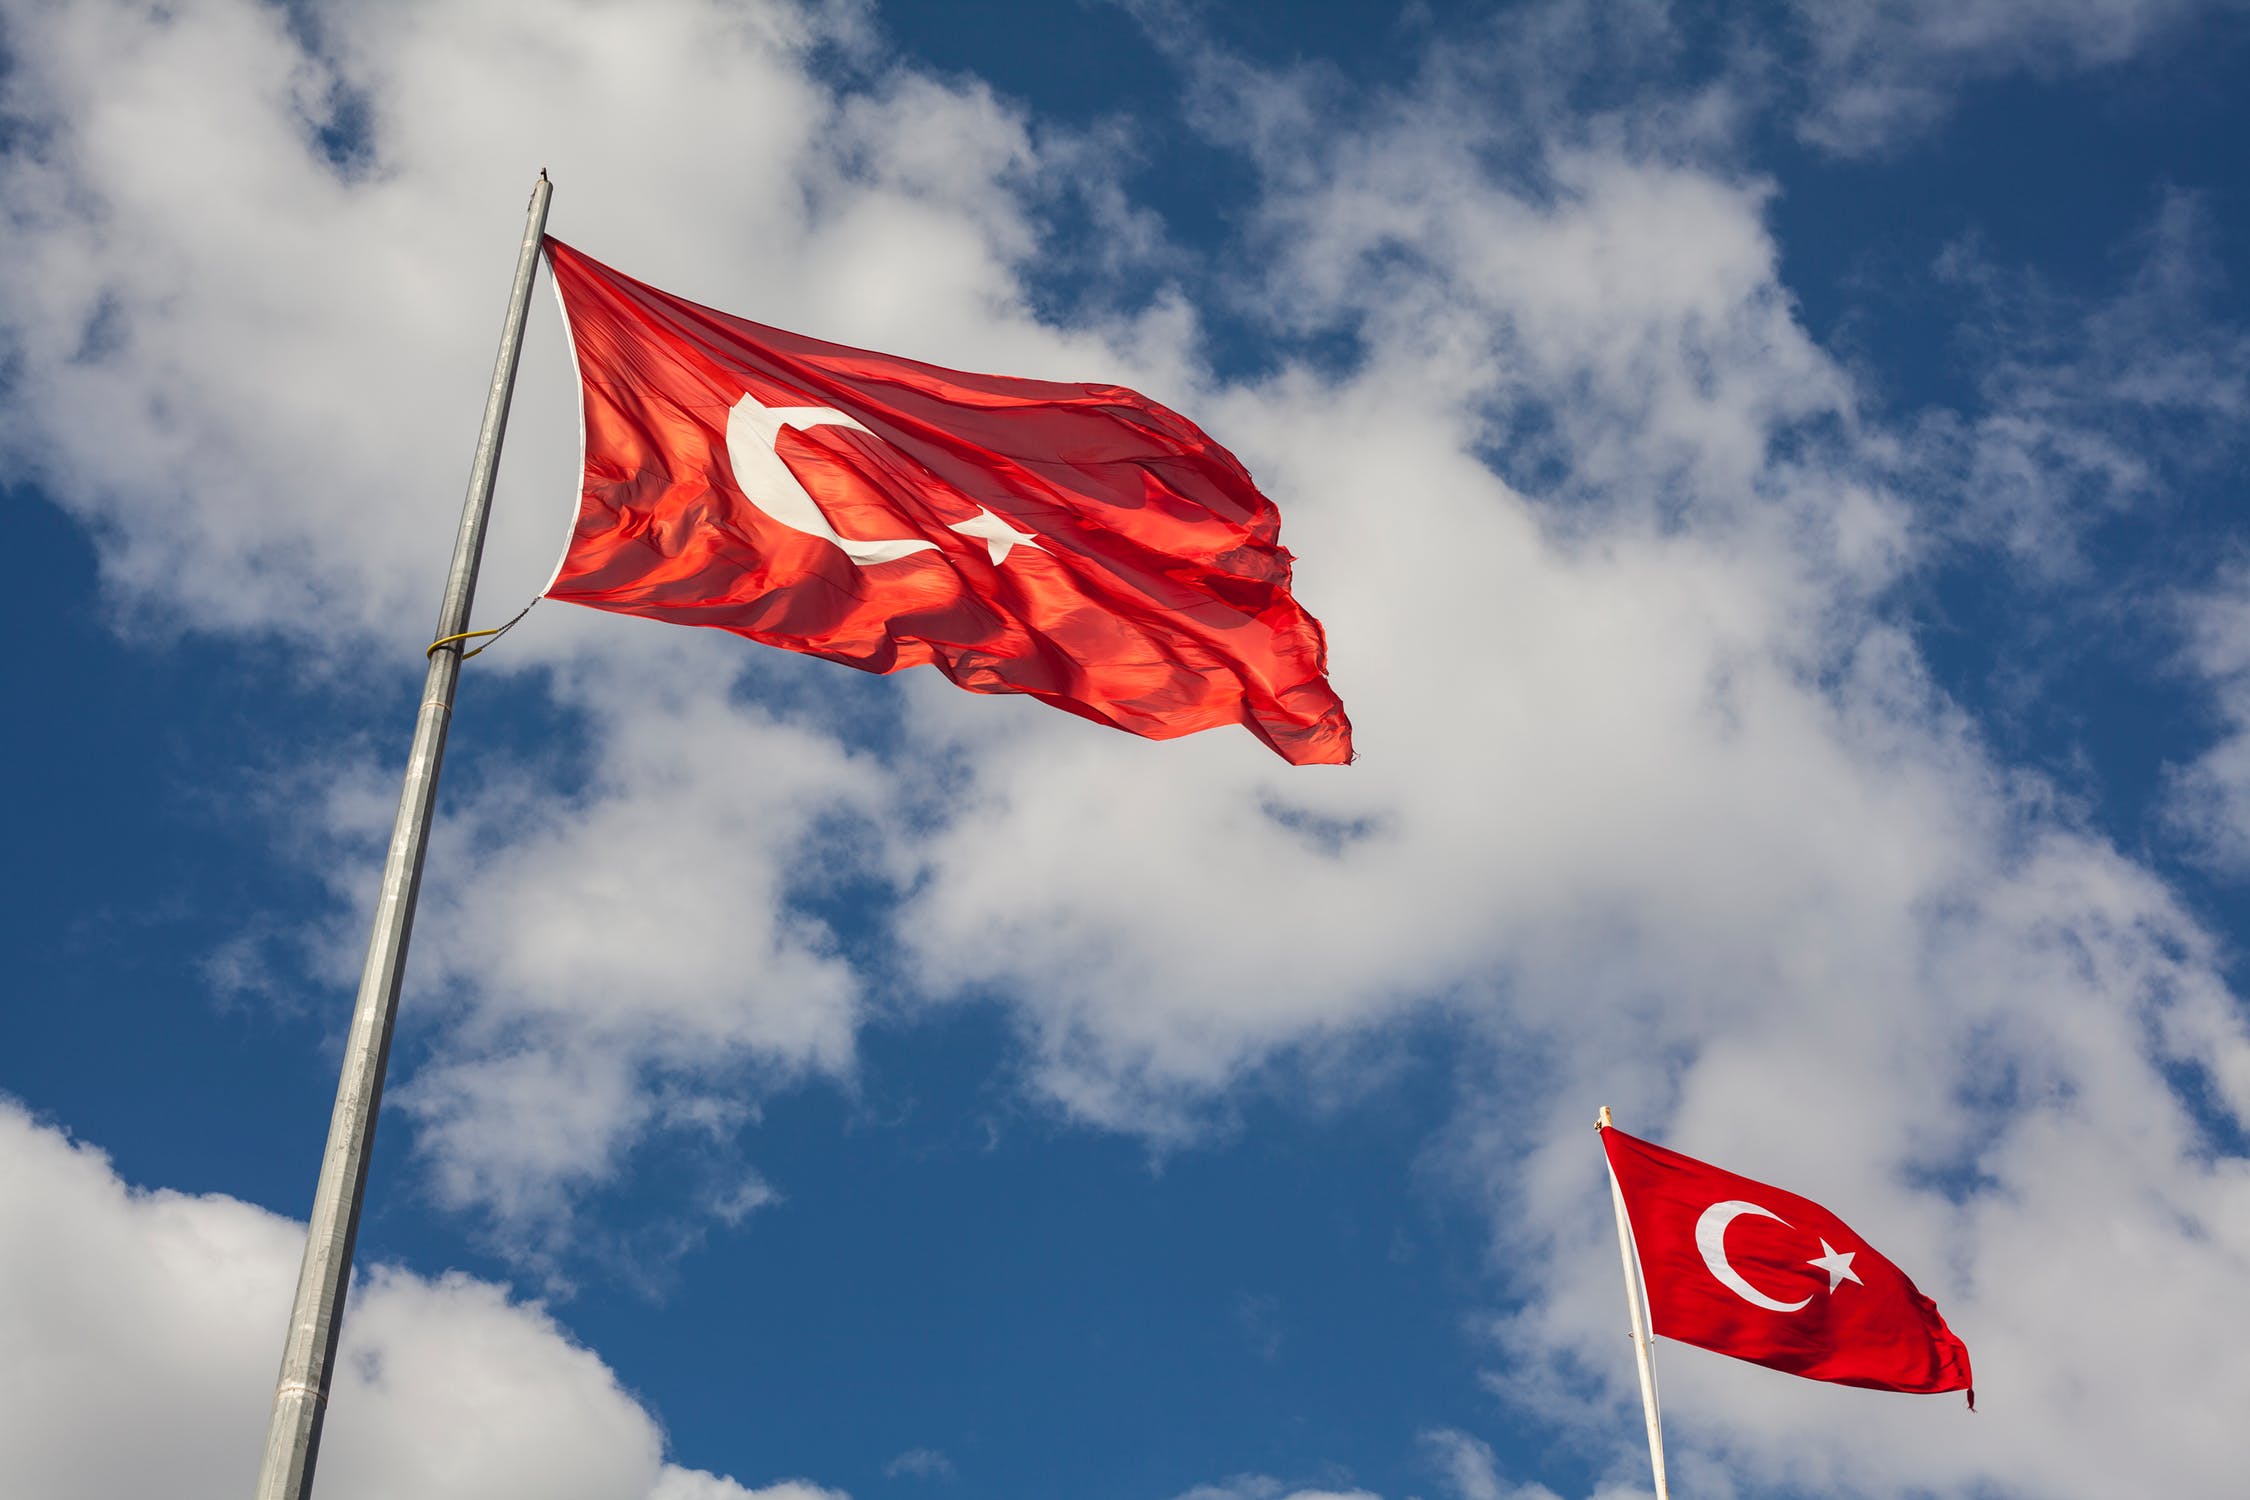 
<p>Bekleidungs- und Textilartikel sind der neue heimliche Exportschlager der Türkei. Noch vor Fahrzeugen (10,5%) und Maschinen (8,9%) waren diese 2022 wie auch im Vorjahr erneut die wertmäßig am meisten exportierte Güter- und Warengruppe mit einem Anteil von 10,8% an den landesweiten Exporten. Aber auch Stahl sowie Elektrotechnik sind für die türkische Exportwirtschaft von großer Bedeutung. Insgesamt wird deutlich, dass die Wirtschaft der Türkei deutlich breiter aufgestellt ist als die meisten anderen Länder der Region und, dass wenig Abhängigkeiten im Rohstoffbereich bestehen. Die gesamten Exporte der Türkei des Jahres 2022 beliefen